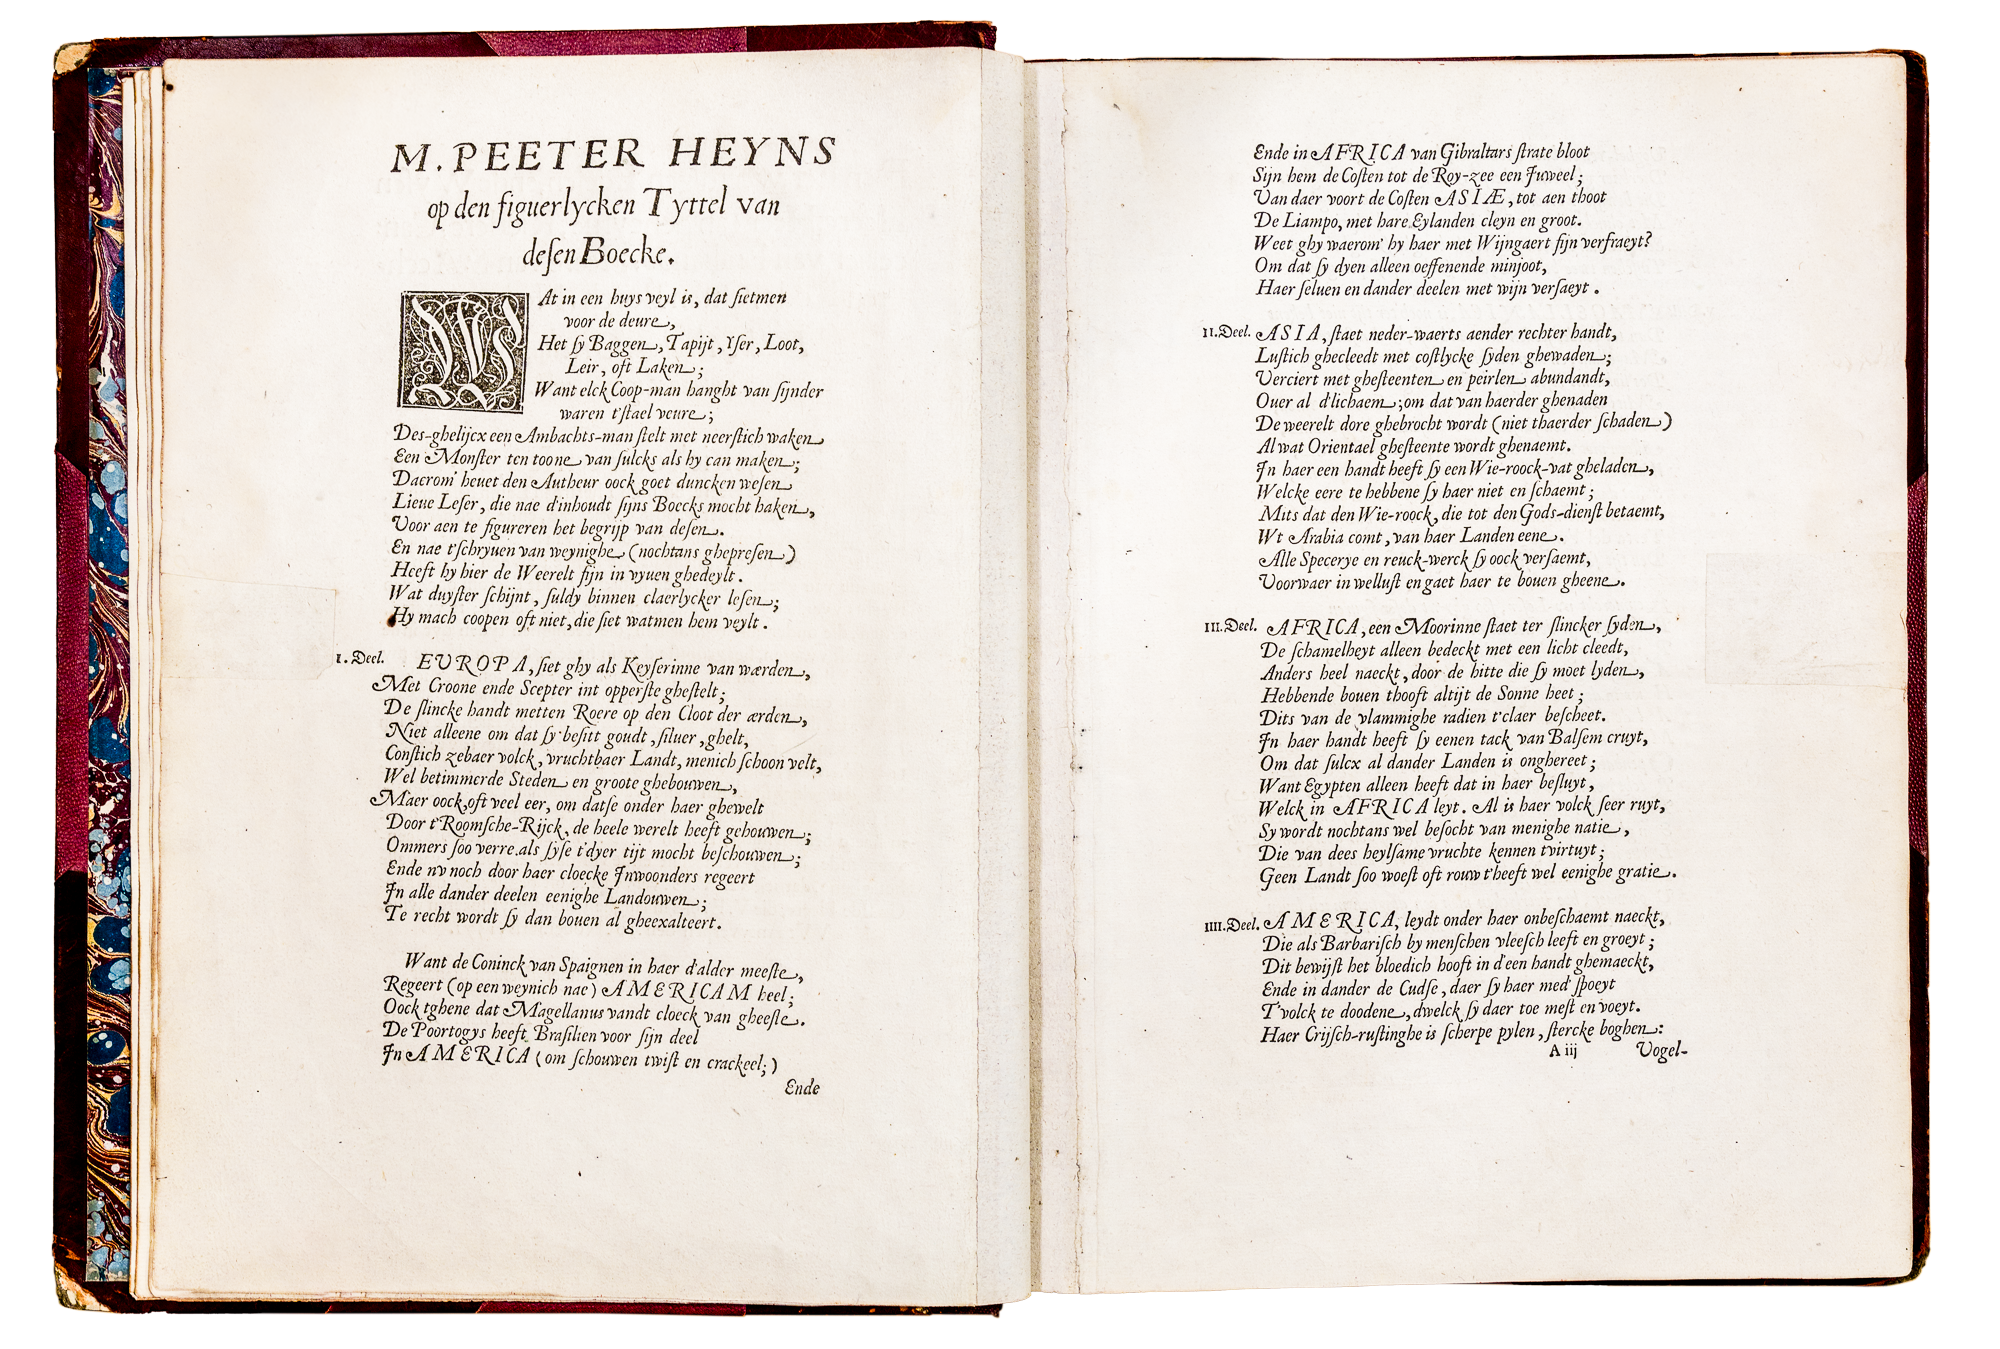 Ortelius sample text